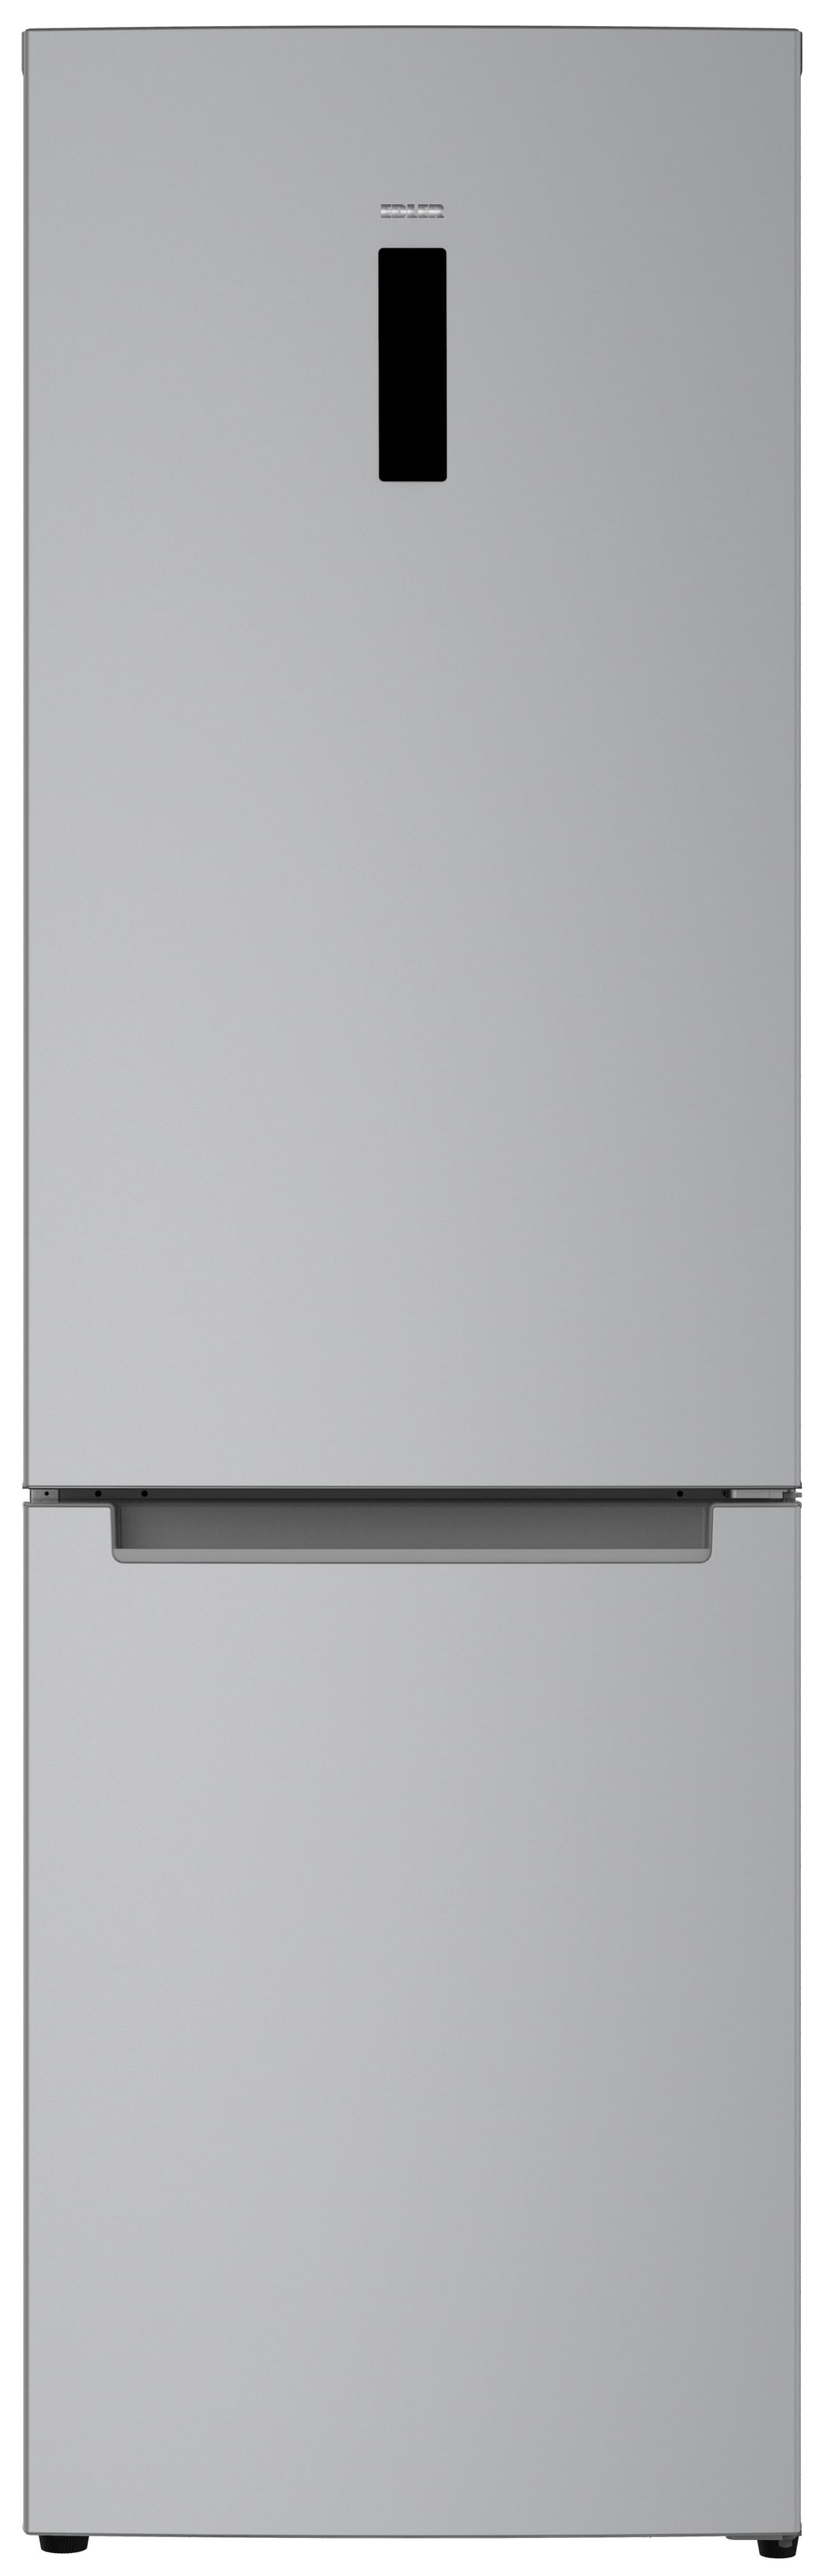 Отзывы холодильник Edler ED-489CIN в Украине